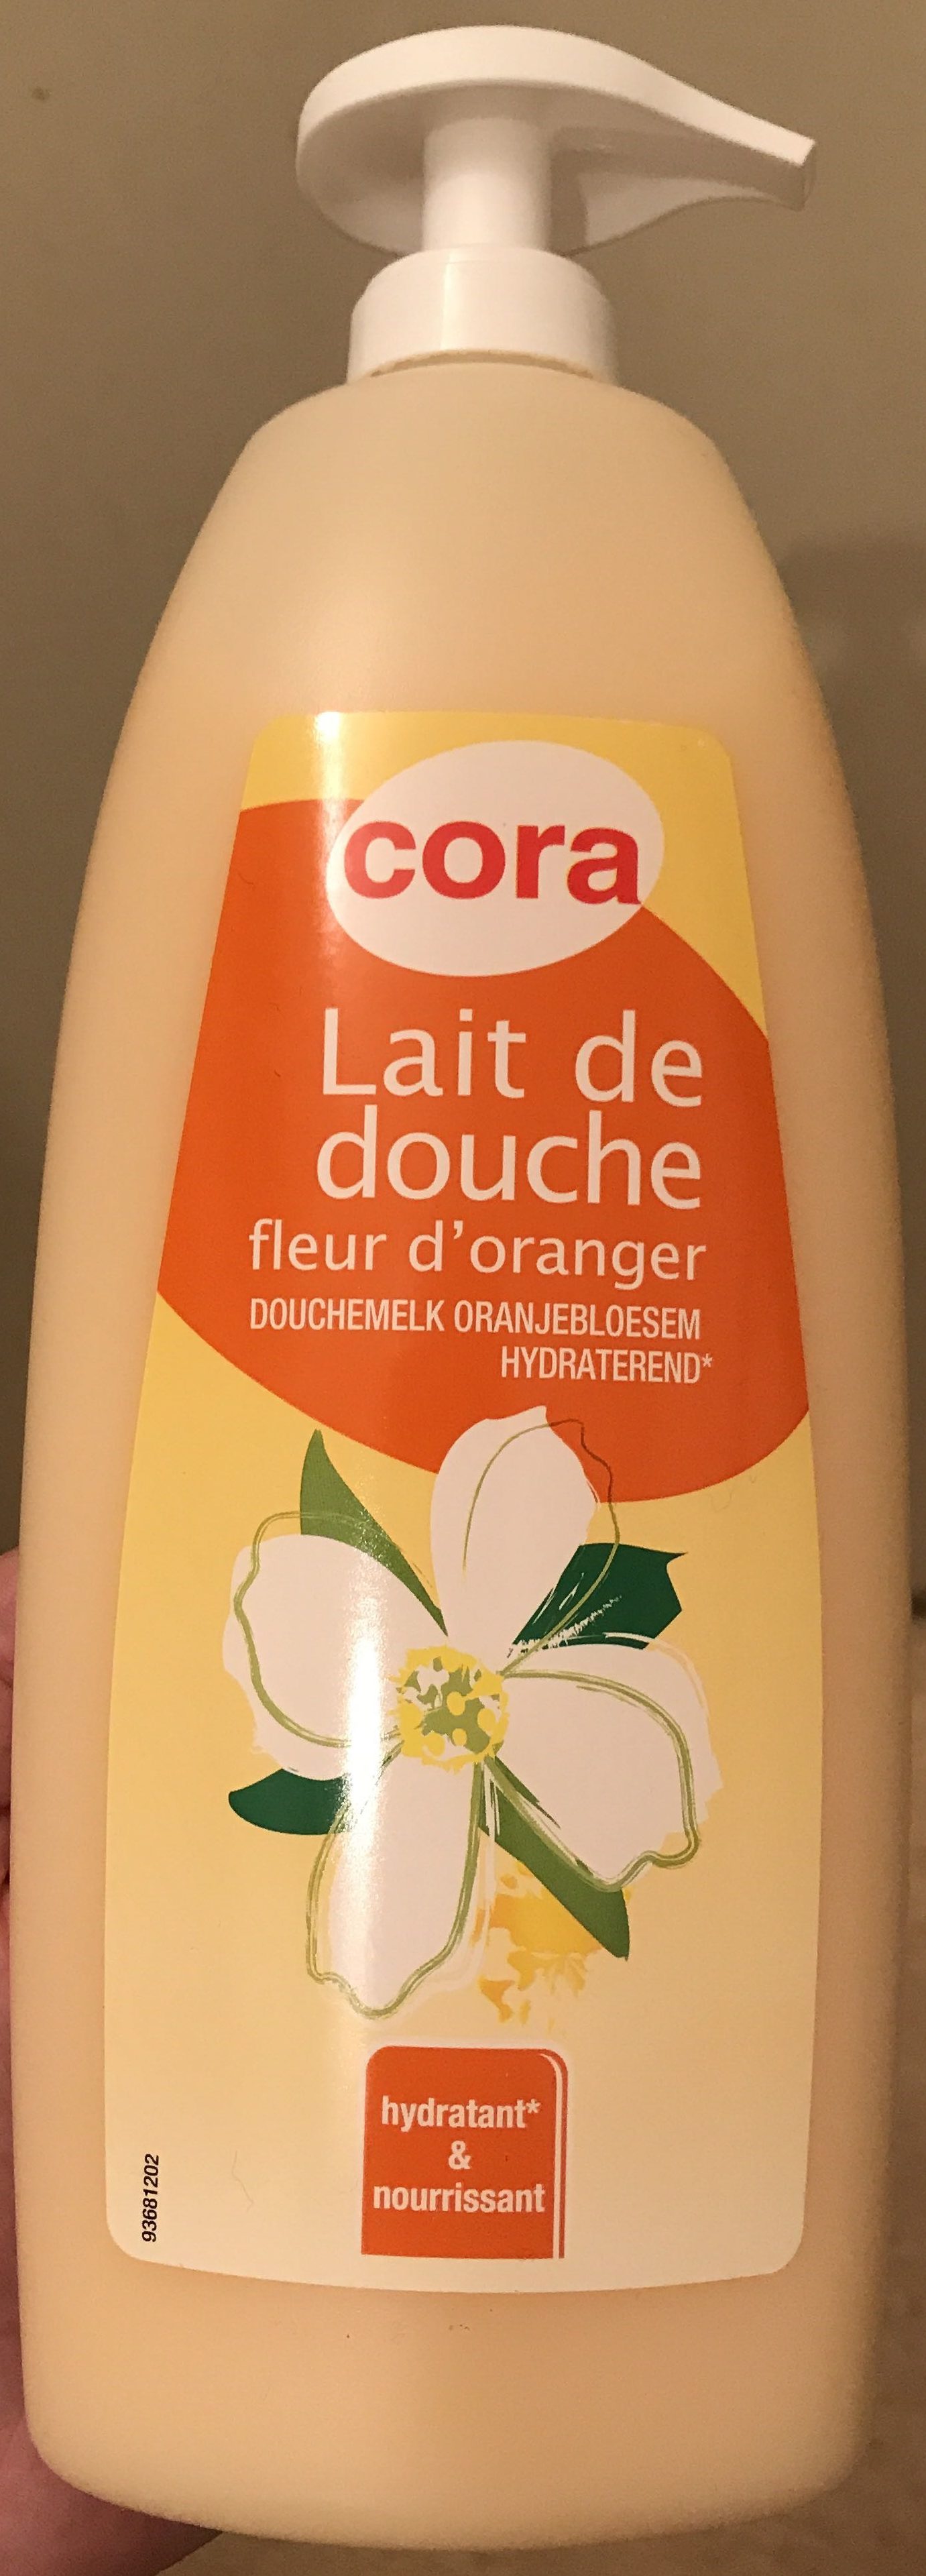 Lait de douche fleur d'oranger - Produit - fr